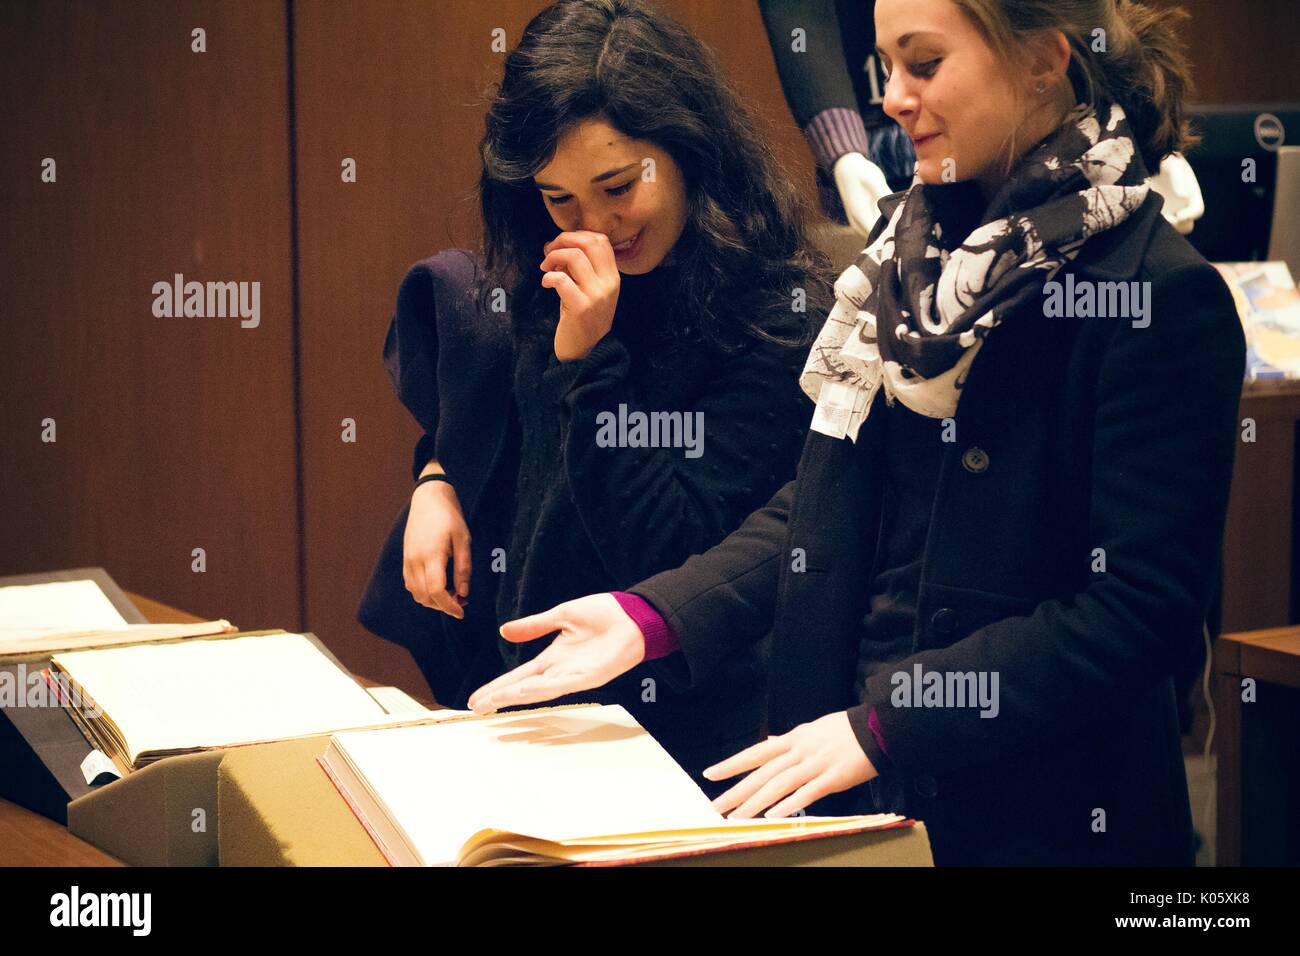 Zwei College Girls beobachten eine Sammlung von 'dirty', erotische, seltene Bücher in den Sondersammlungen Abteilung der Johns Hopkins Universität Sheridan Bibliotheken, eine an ein offenes Buch zeigt, die anderen lachen, 2016. Stockfoto